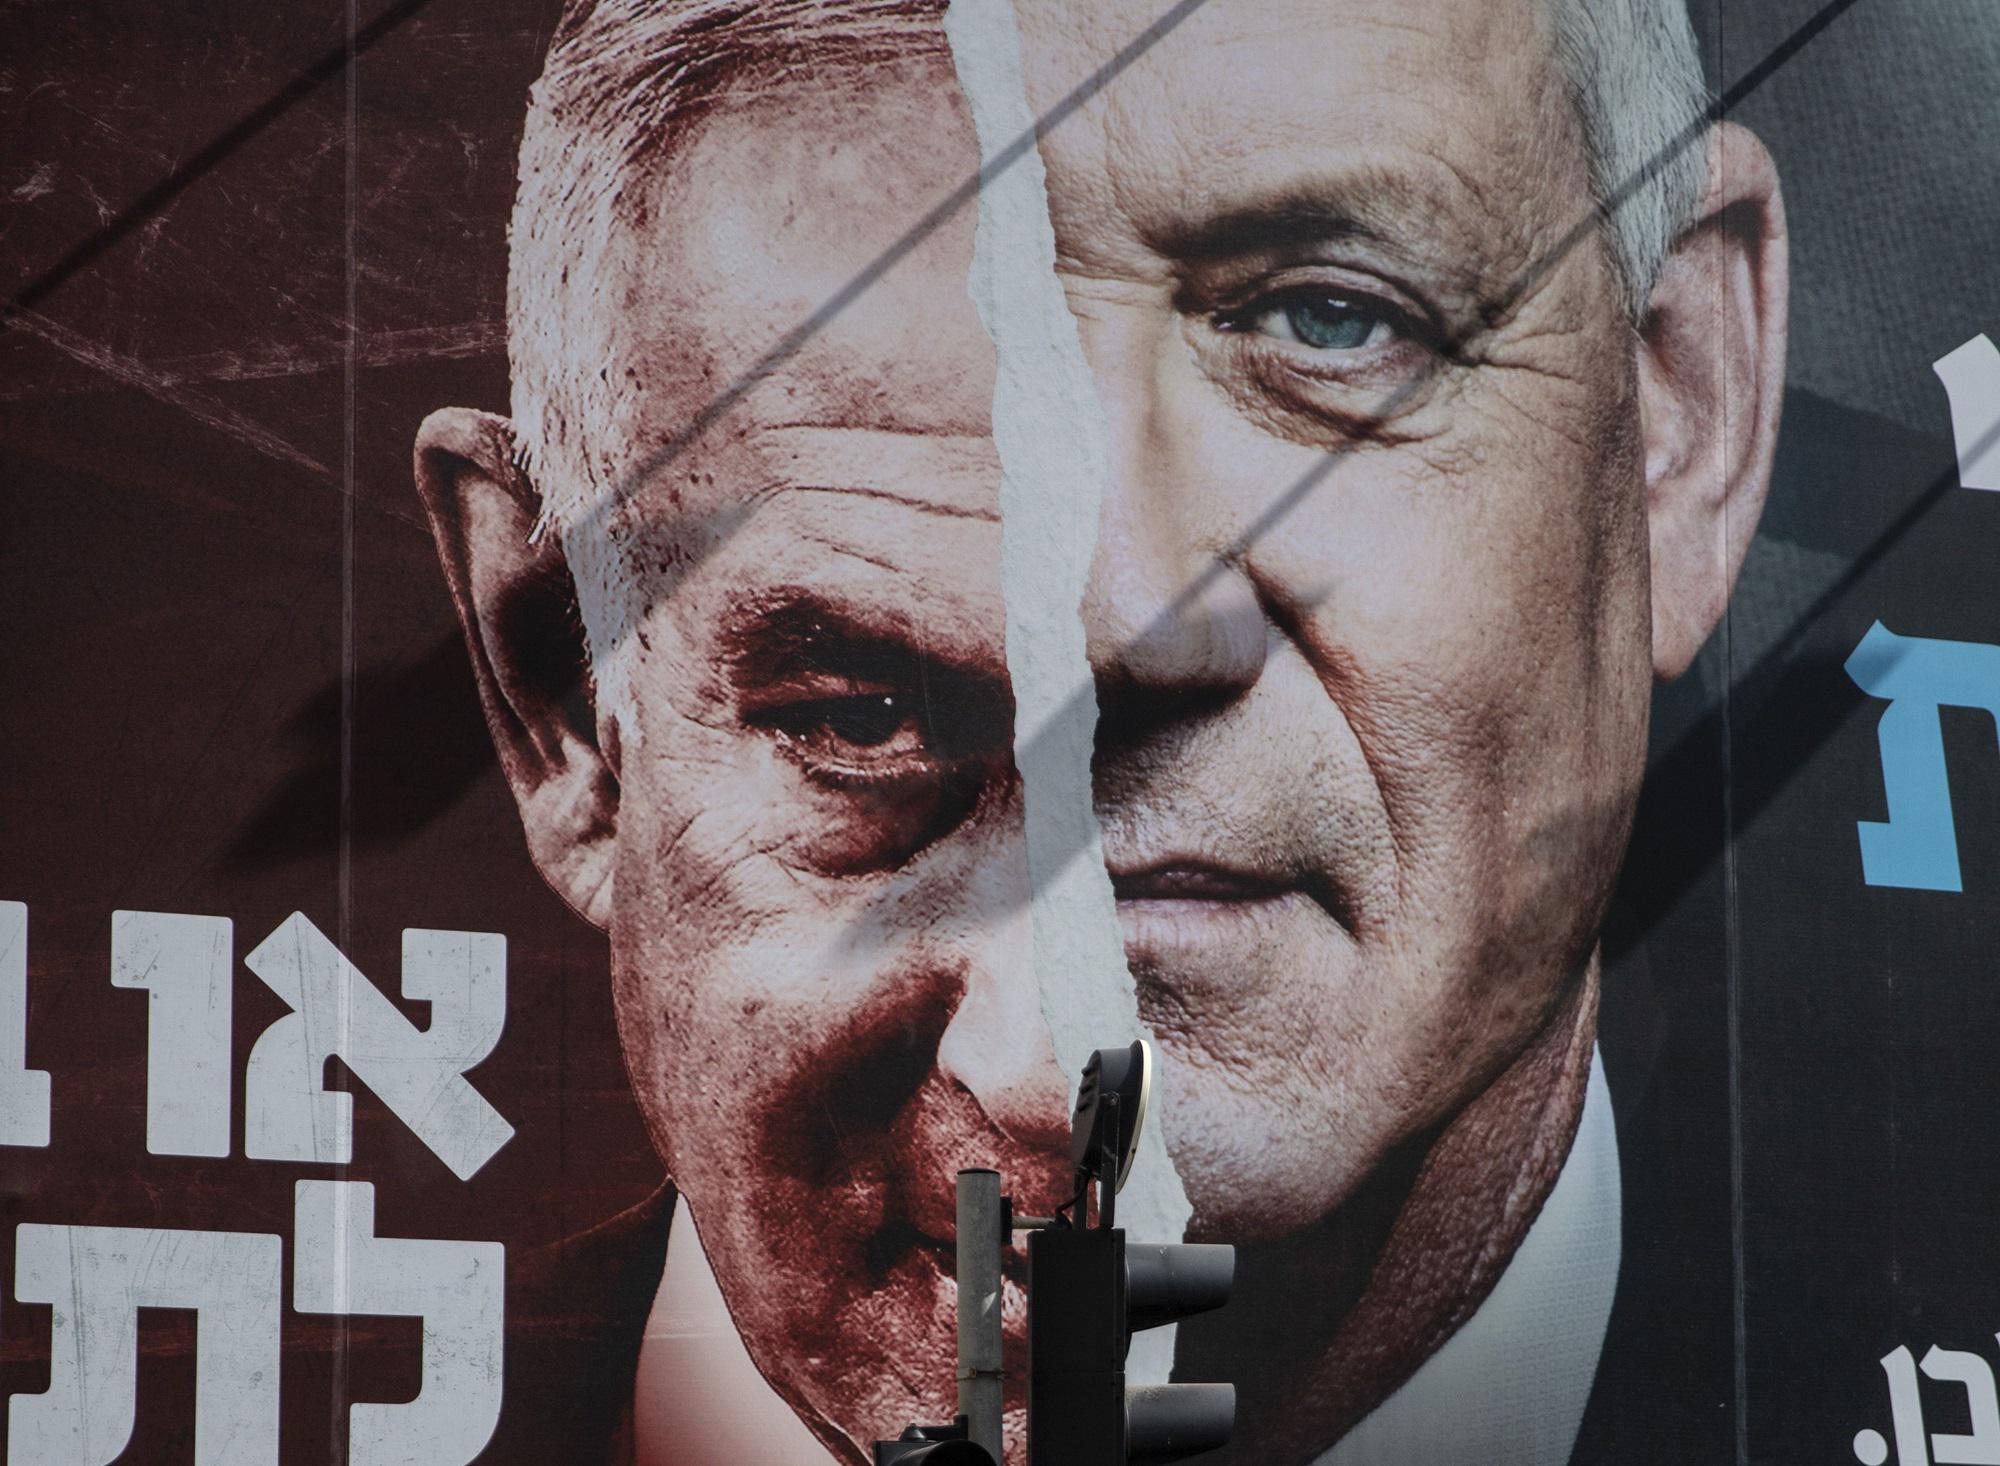 Conflict between Gantz and Netanyahu over post-war plan for Gaza